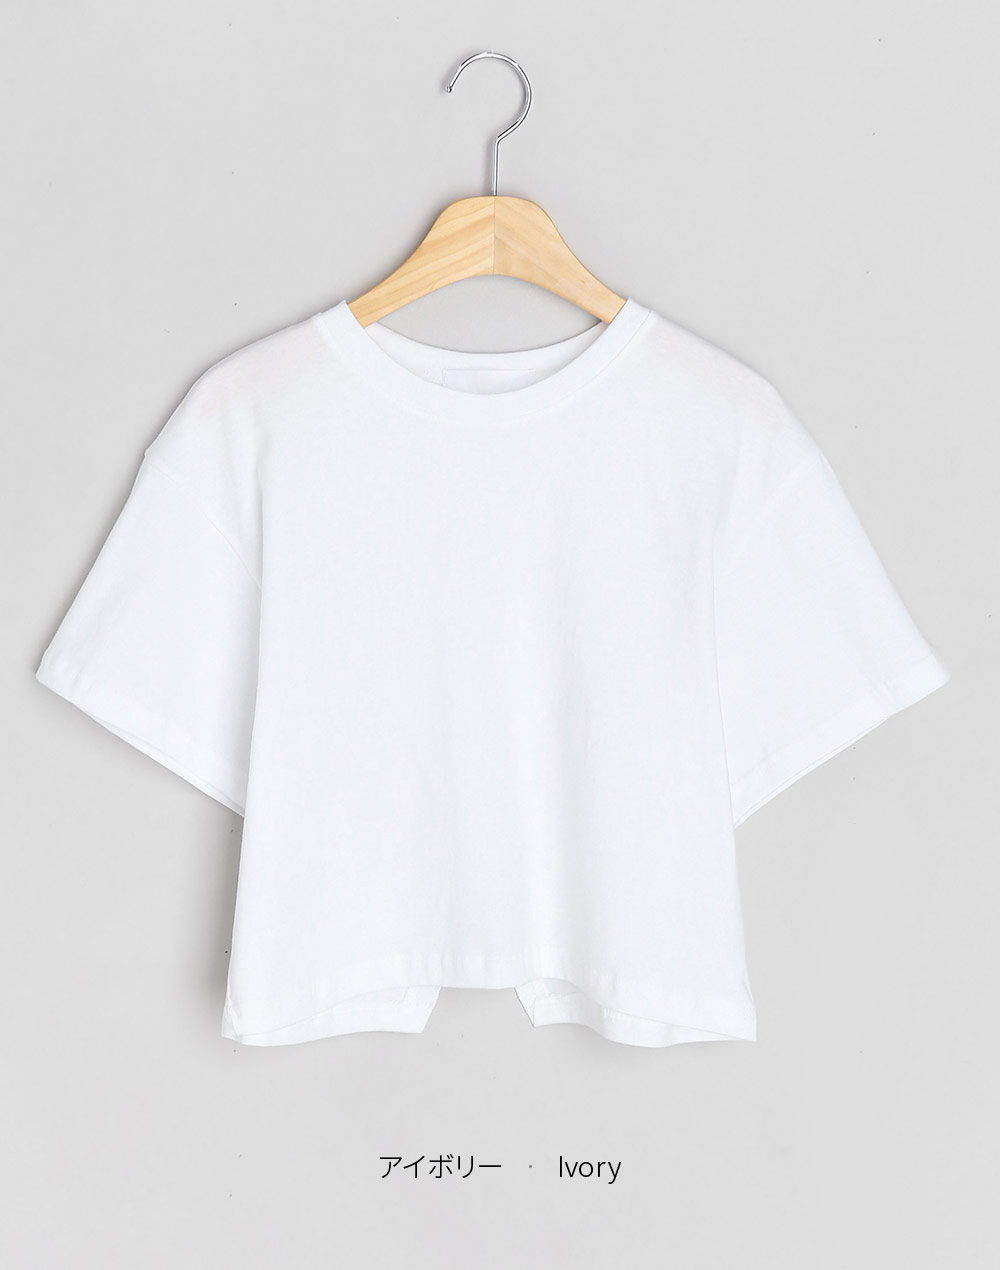 バッグ切り替えオープンTシャツ・t281562（トップス/Tシャツ）| saori.3hsi | 東京ガールズマーケット